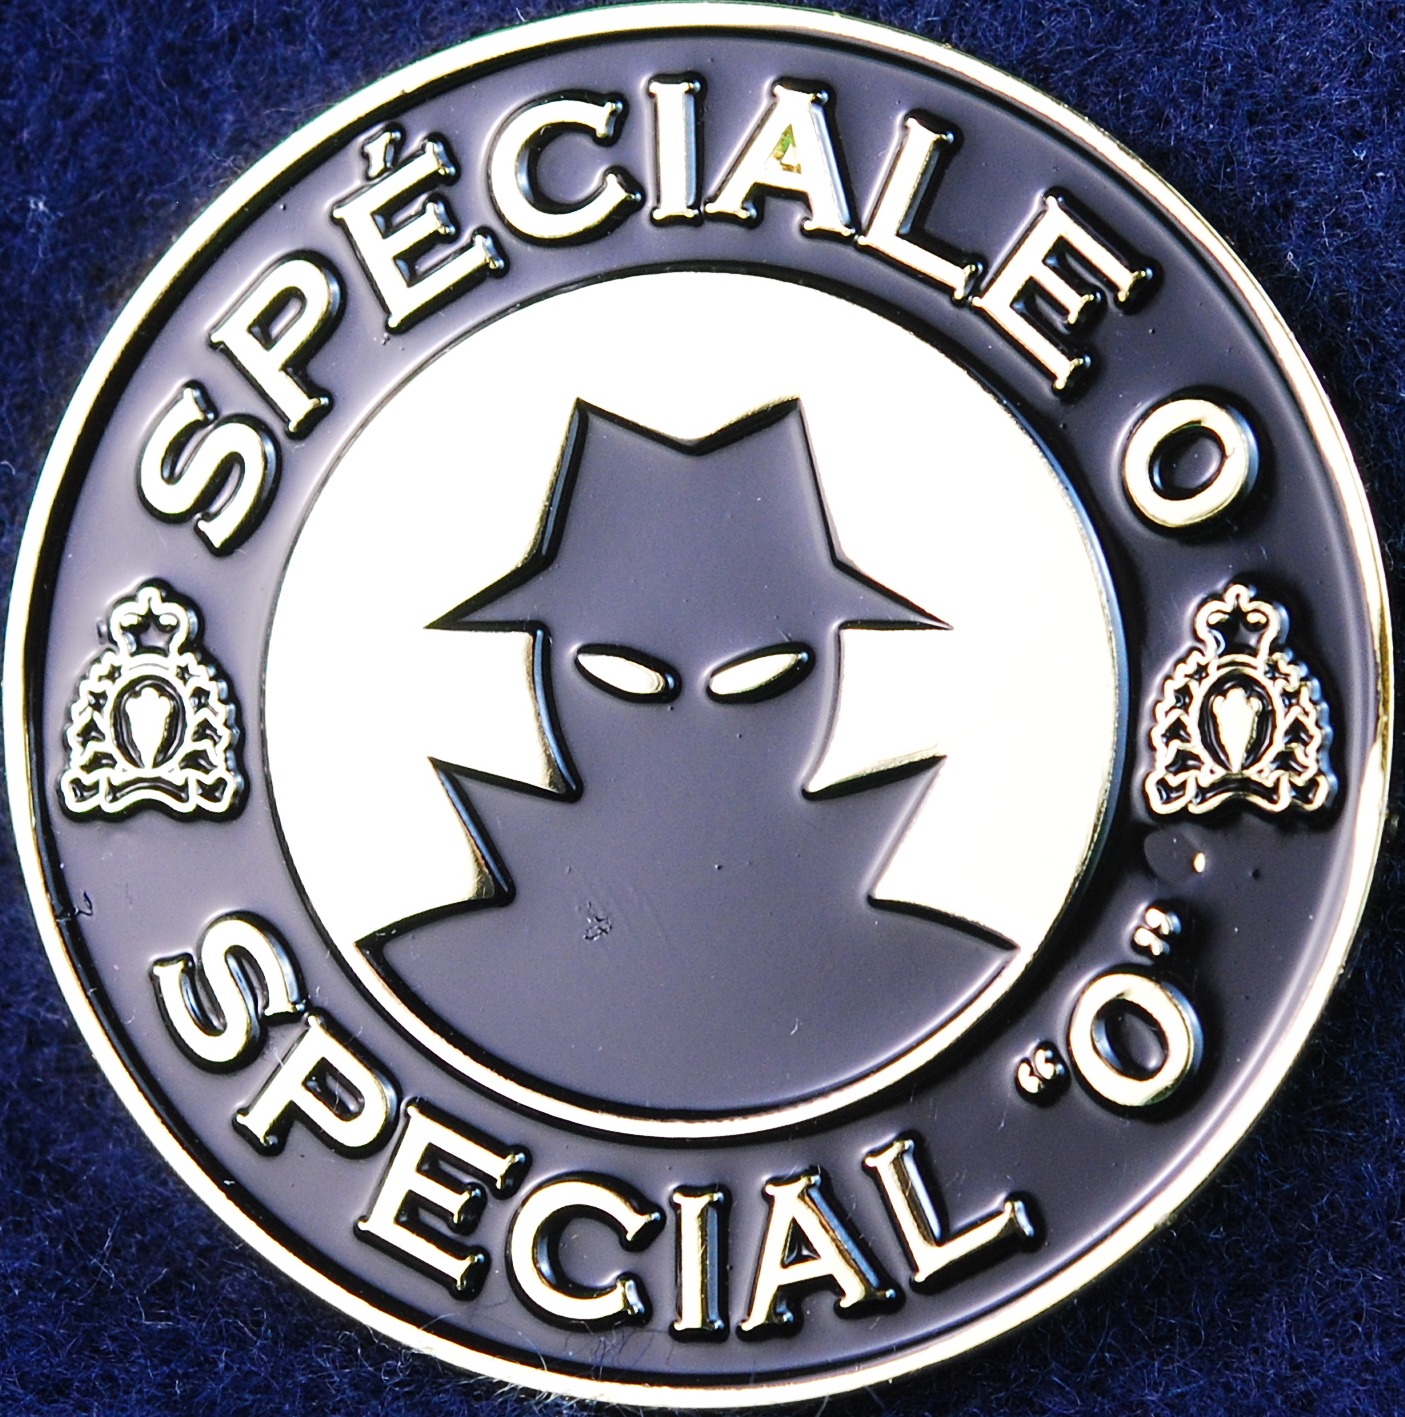 Special o